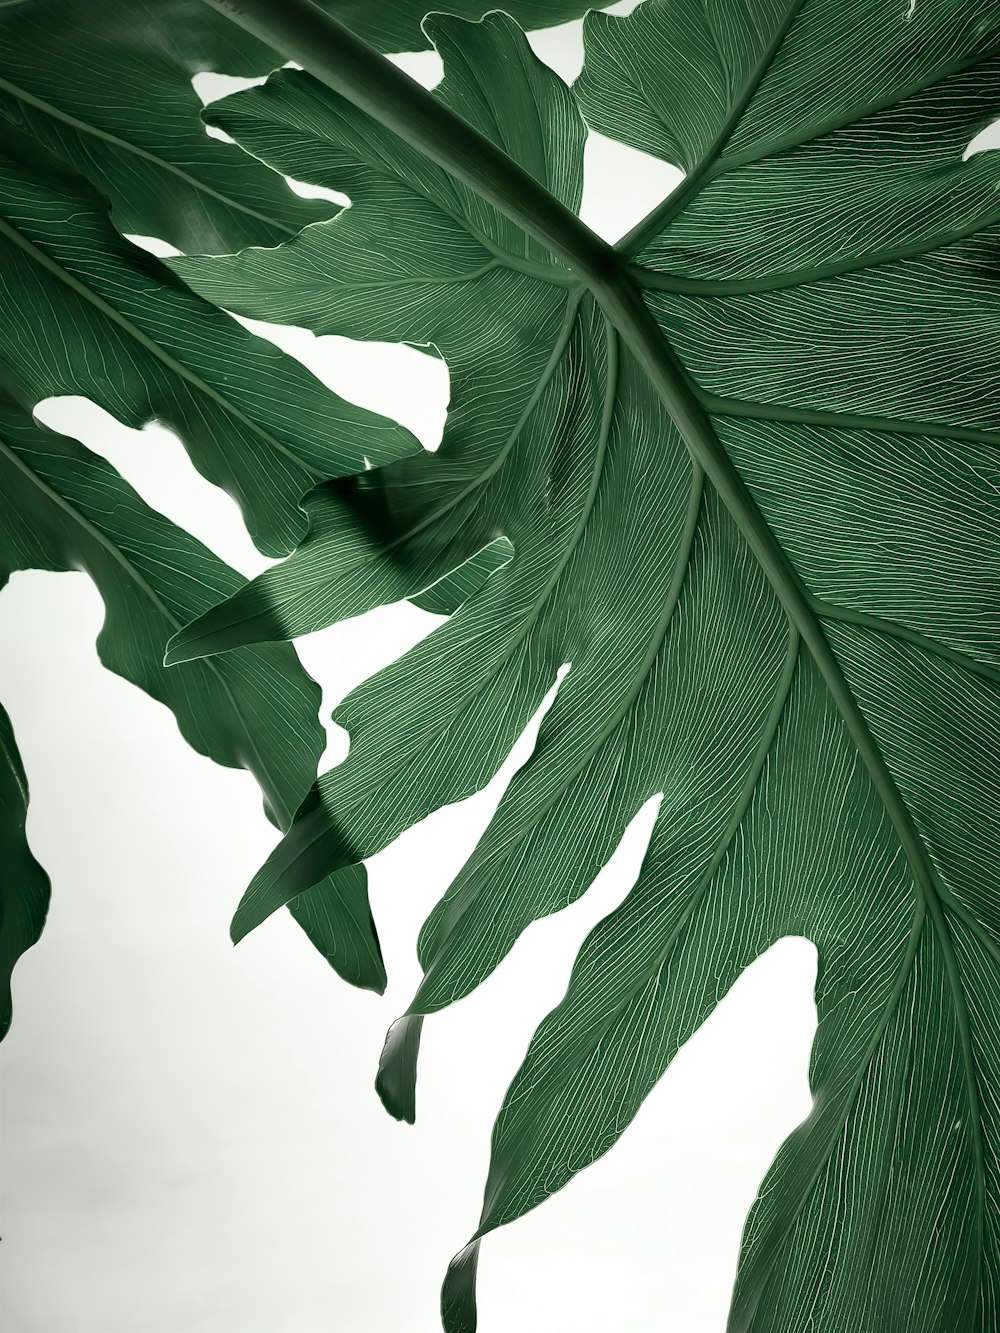 planta de hoja verde en fotografía de primer plano